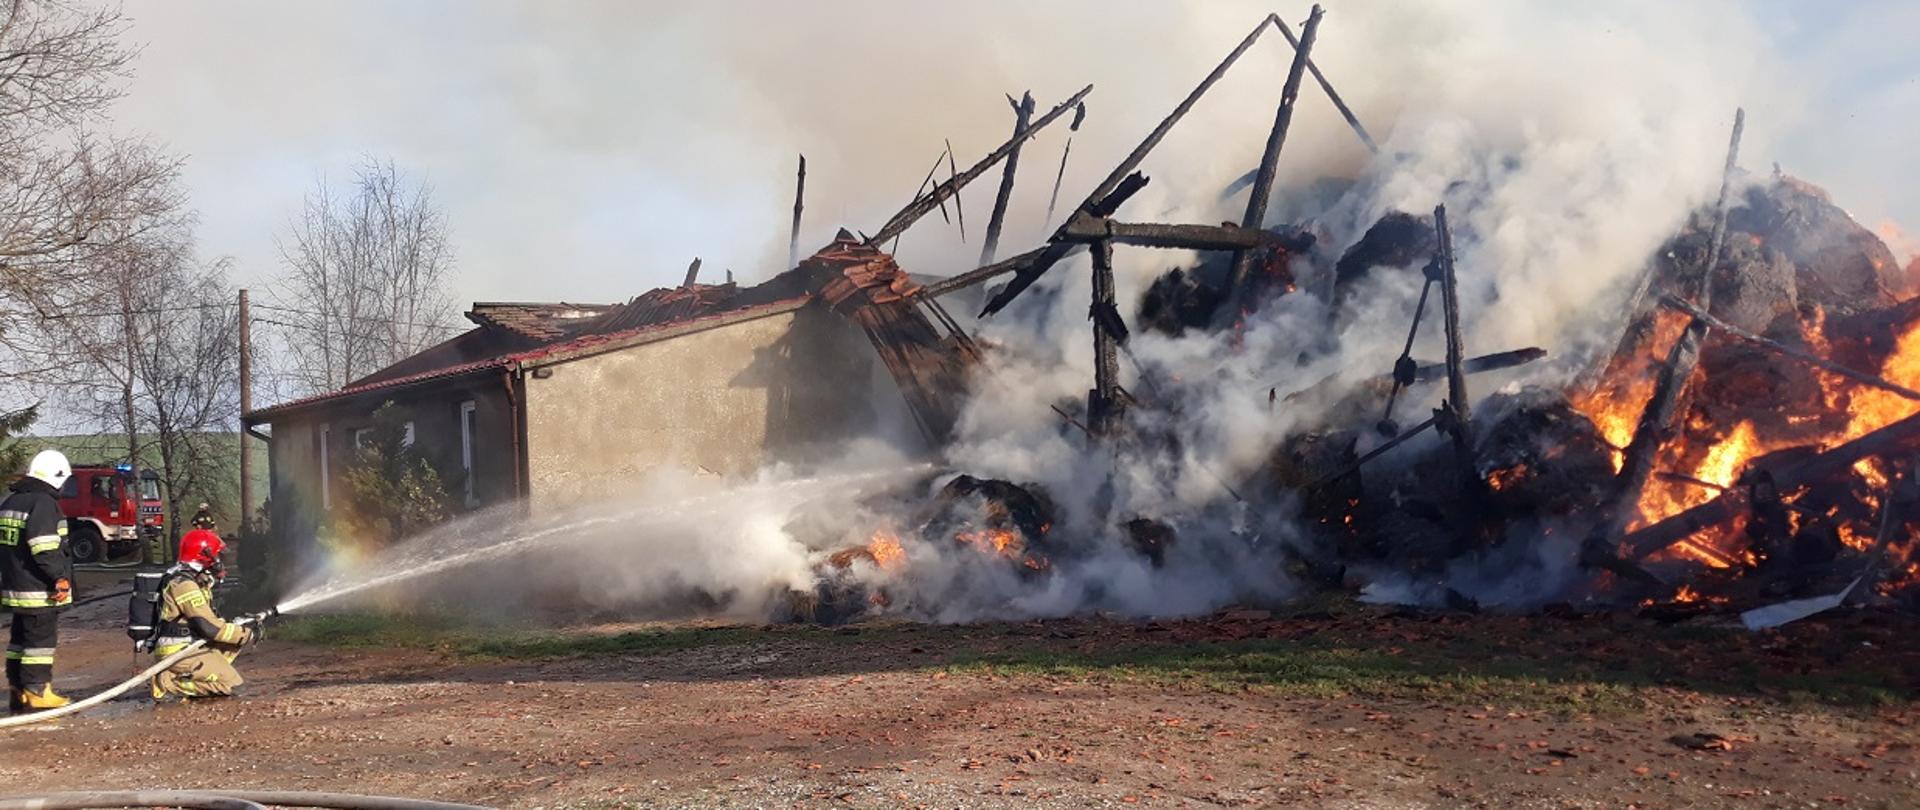 Zdjęcie przedstawia działania gaśnicze w natarciu na palące się pozostałości budynku magazynowego (stodoła ) prowadzone przez dwóch strażaków (jednego z Państwowej Straży Pożarnej, a drugiego z Ochotniczej Straży Pożarnej)